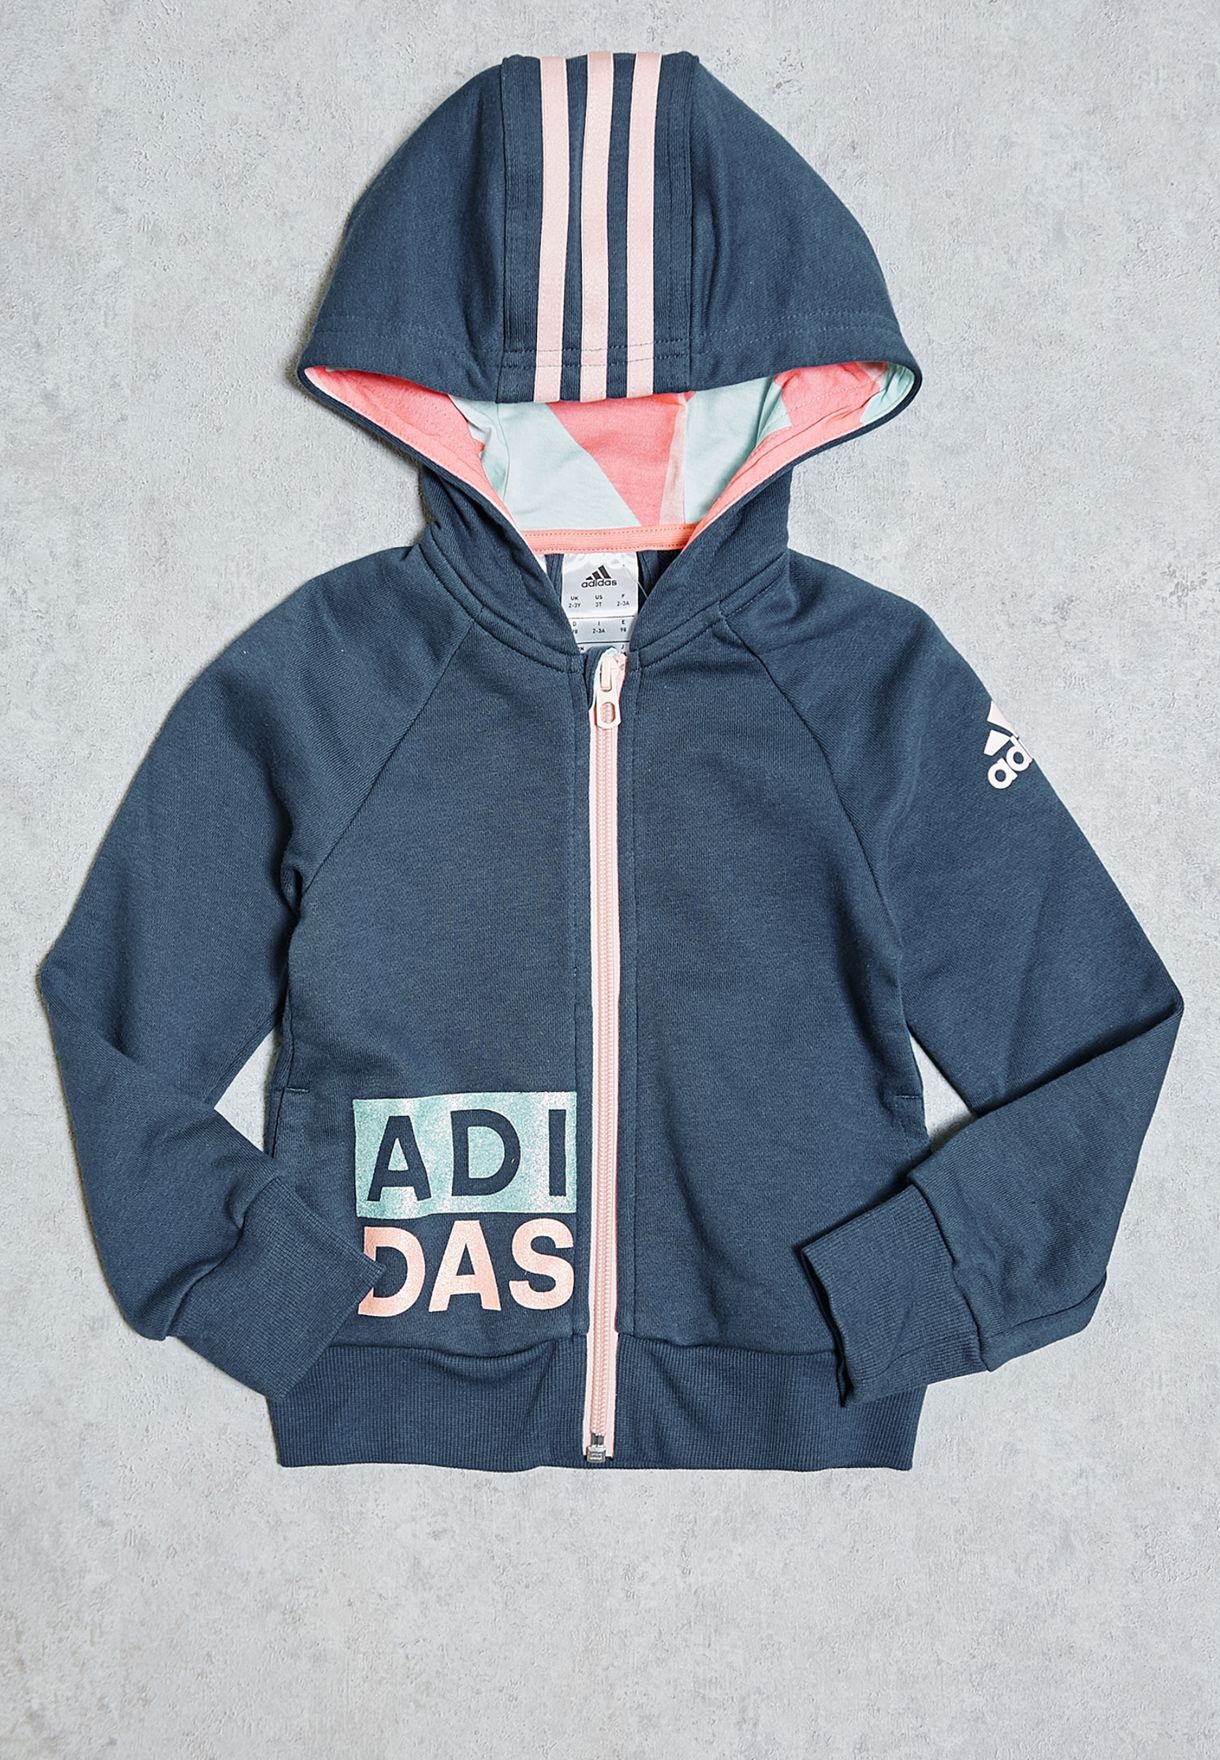 adidas zip up hoodie kids